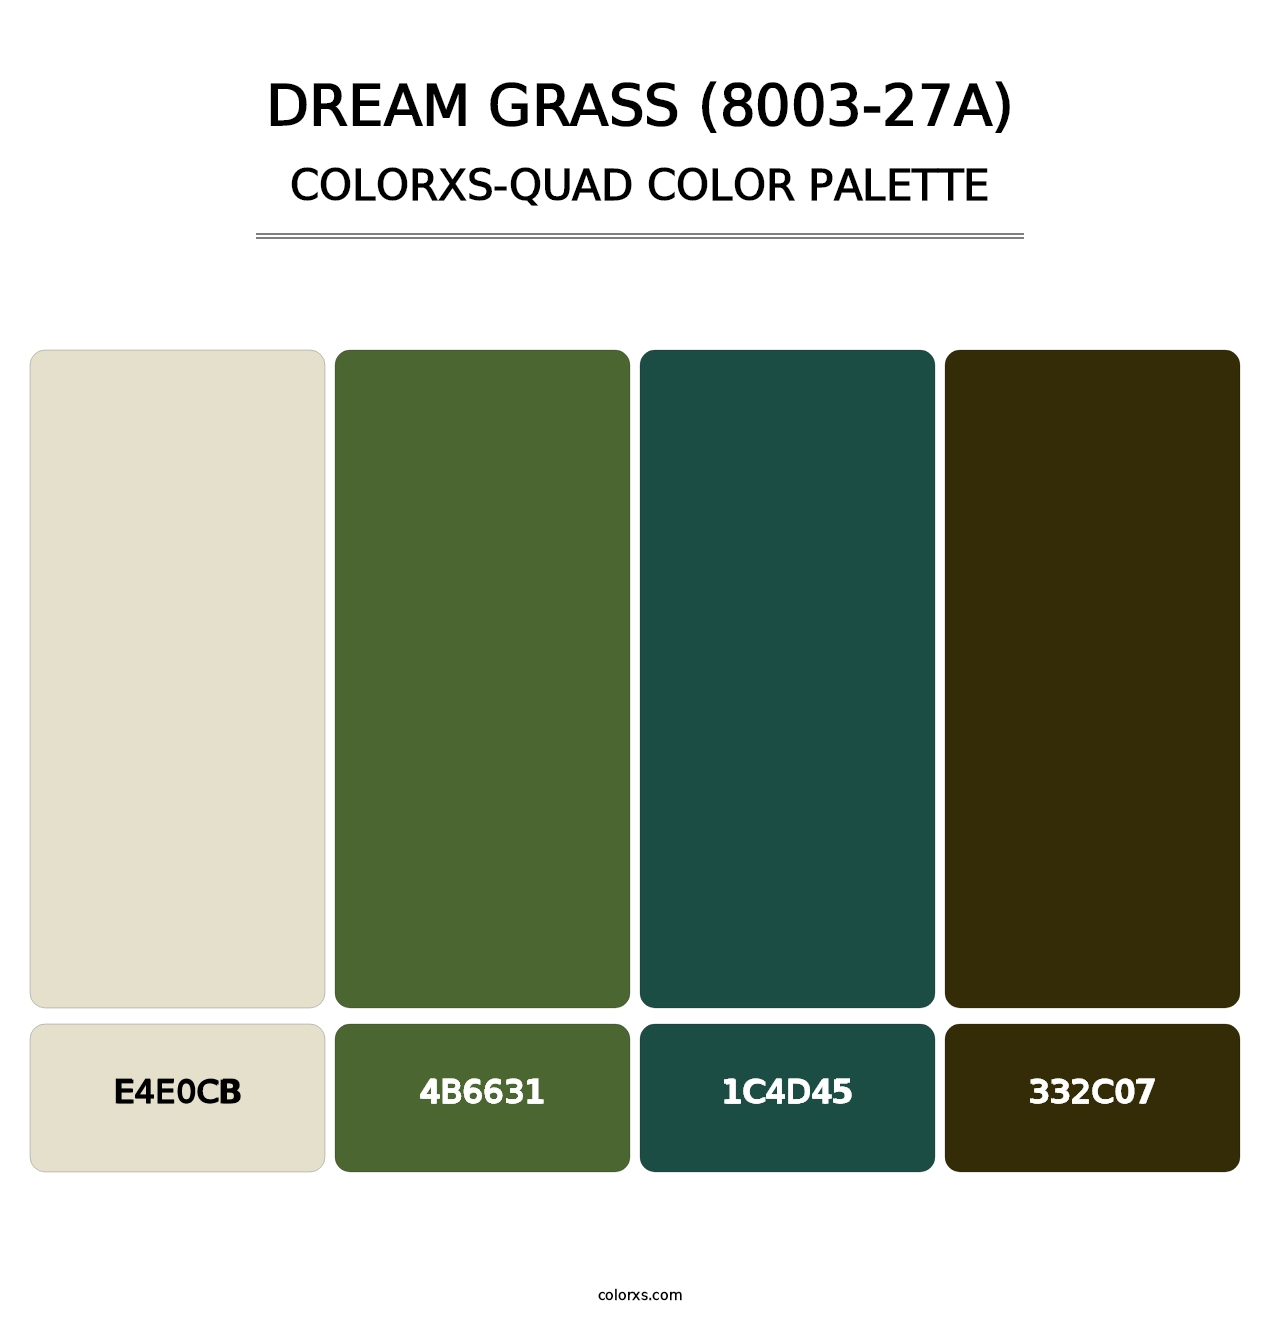 Dream Grass (8003-27A) - Colorxs Quad Palette